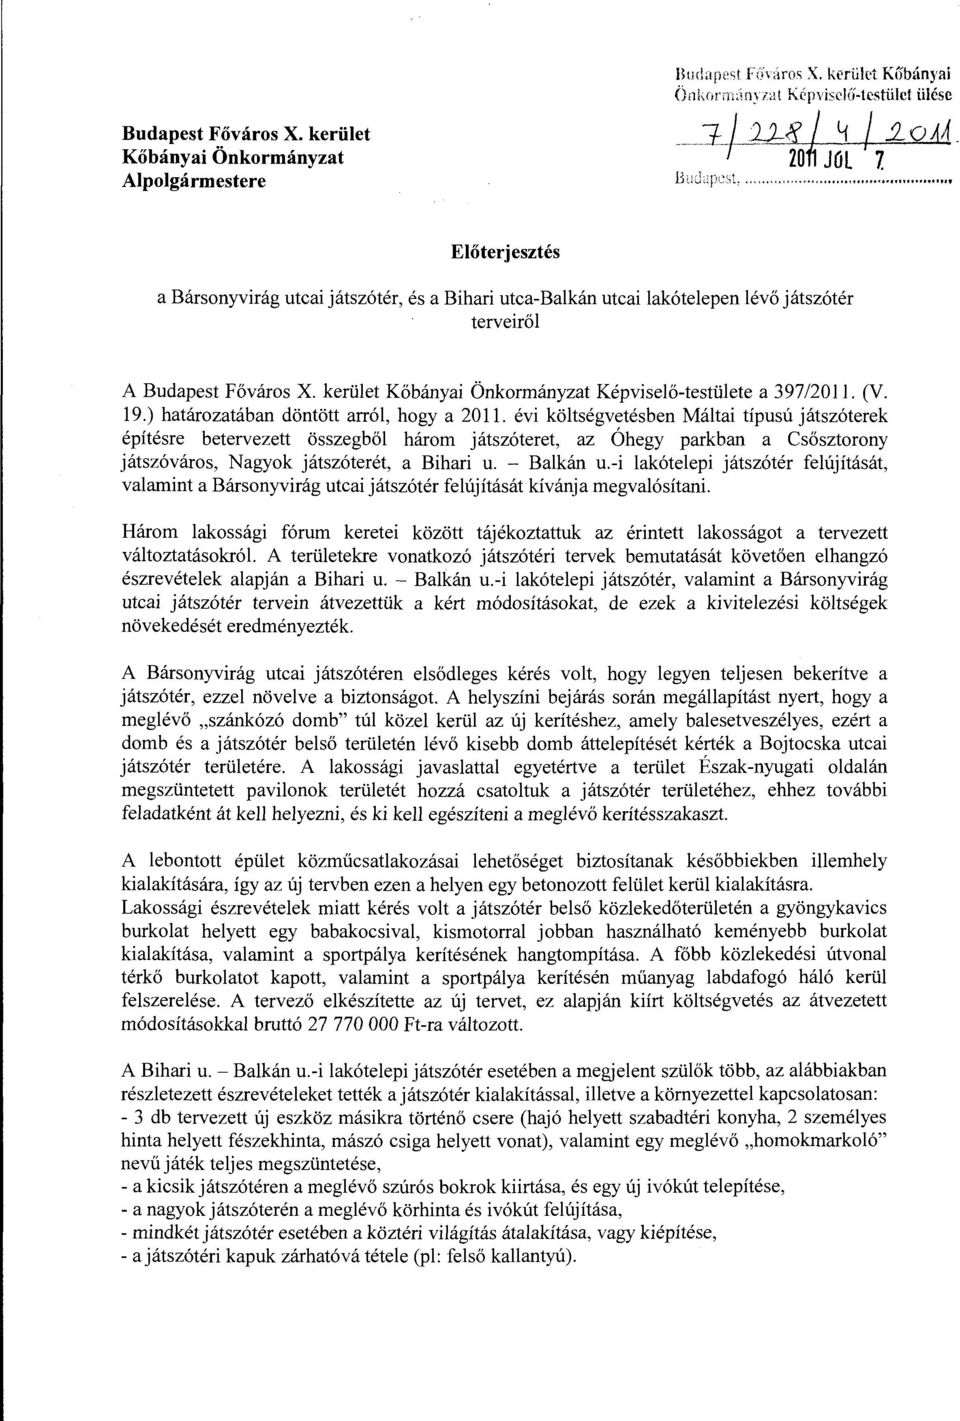 kerüet Kőbányai Önkrmányzat Képviseő-testüete a 397/2011. (V. 19.) határzatában döntött arró, hgy a 2011.